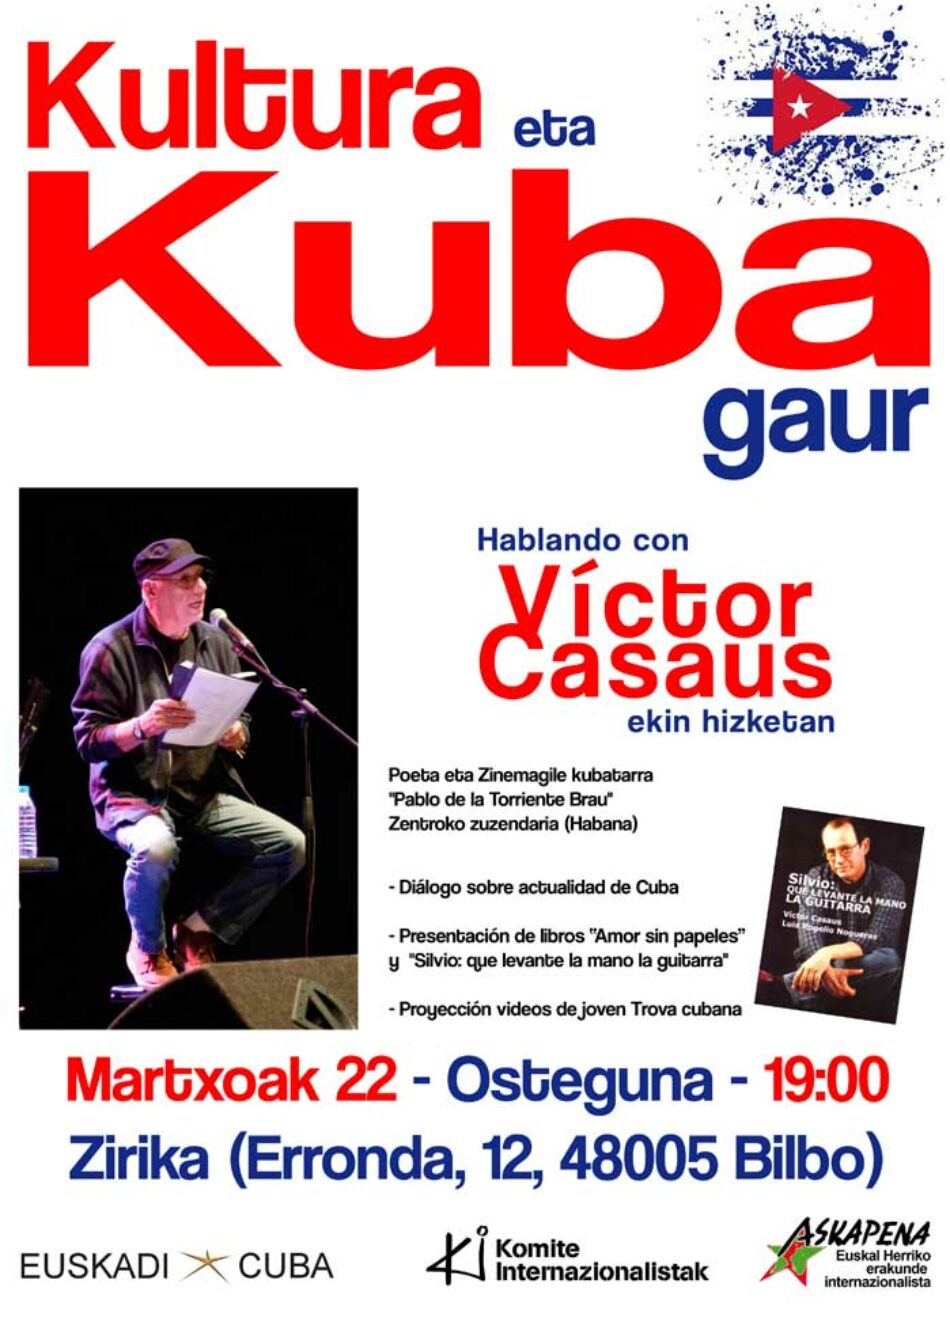 Cultura y Cuba hoy, hablando con Víctor Casaus: Bilbao 22 de marzo